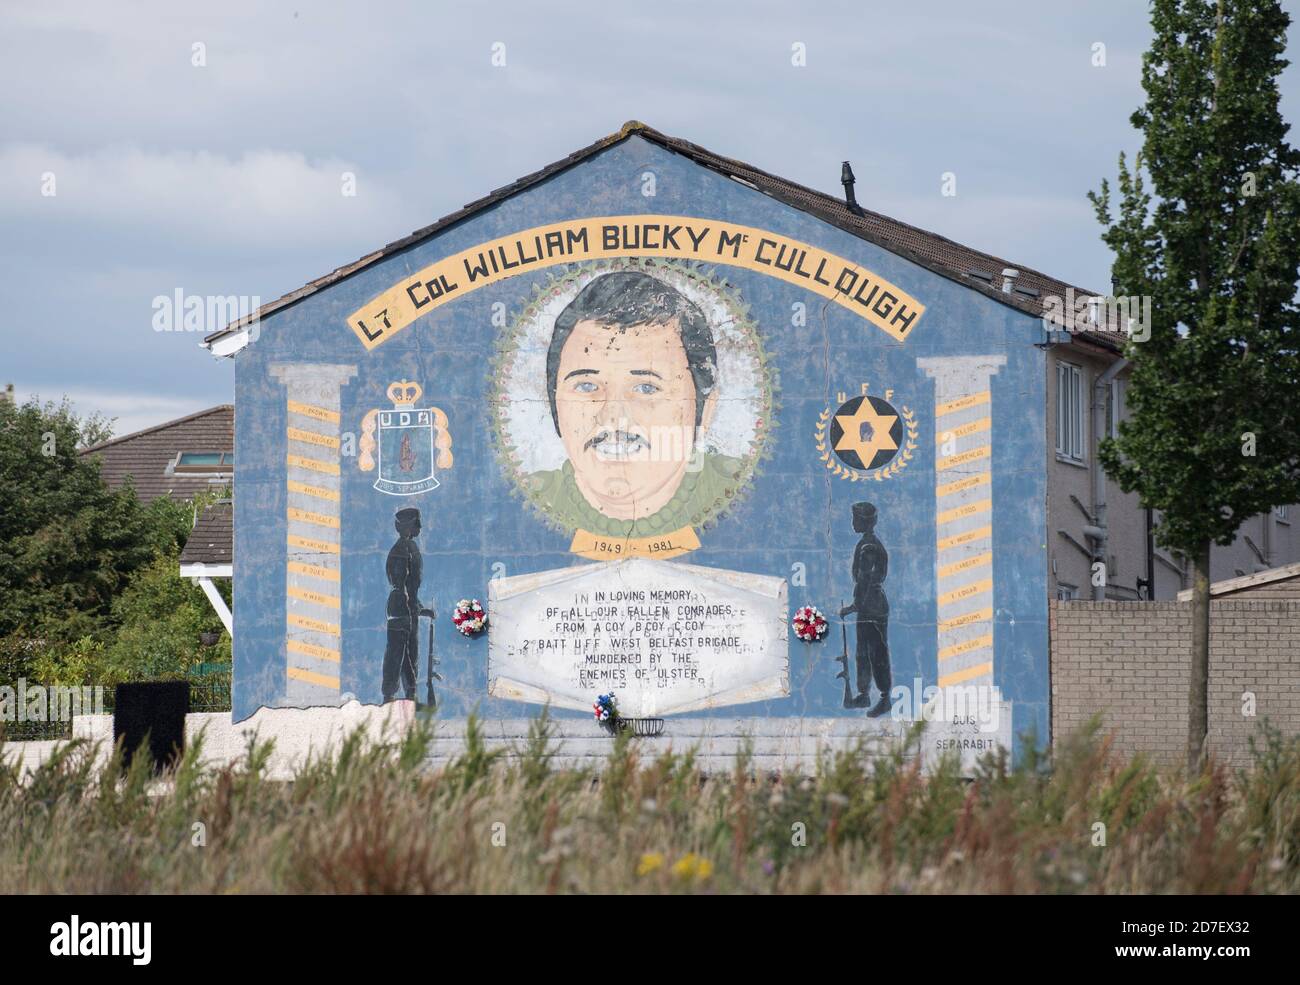 Le colonel William Bucky McCullough trouble murale à Belfast, dans le comté d'Antrim, en Irlande du Nord, au Royaume-Uni Banque D'Images